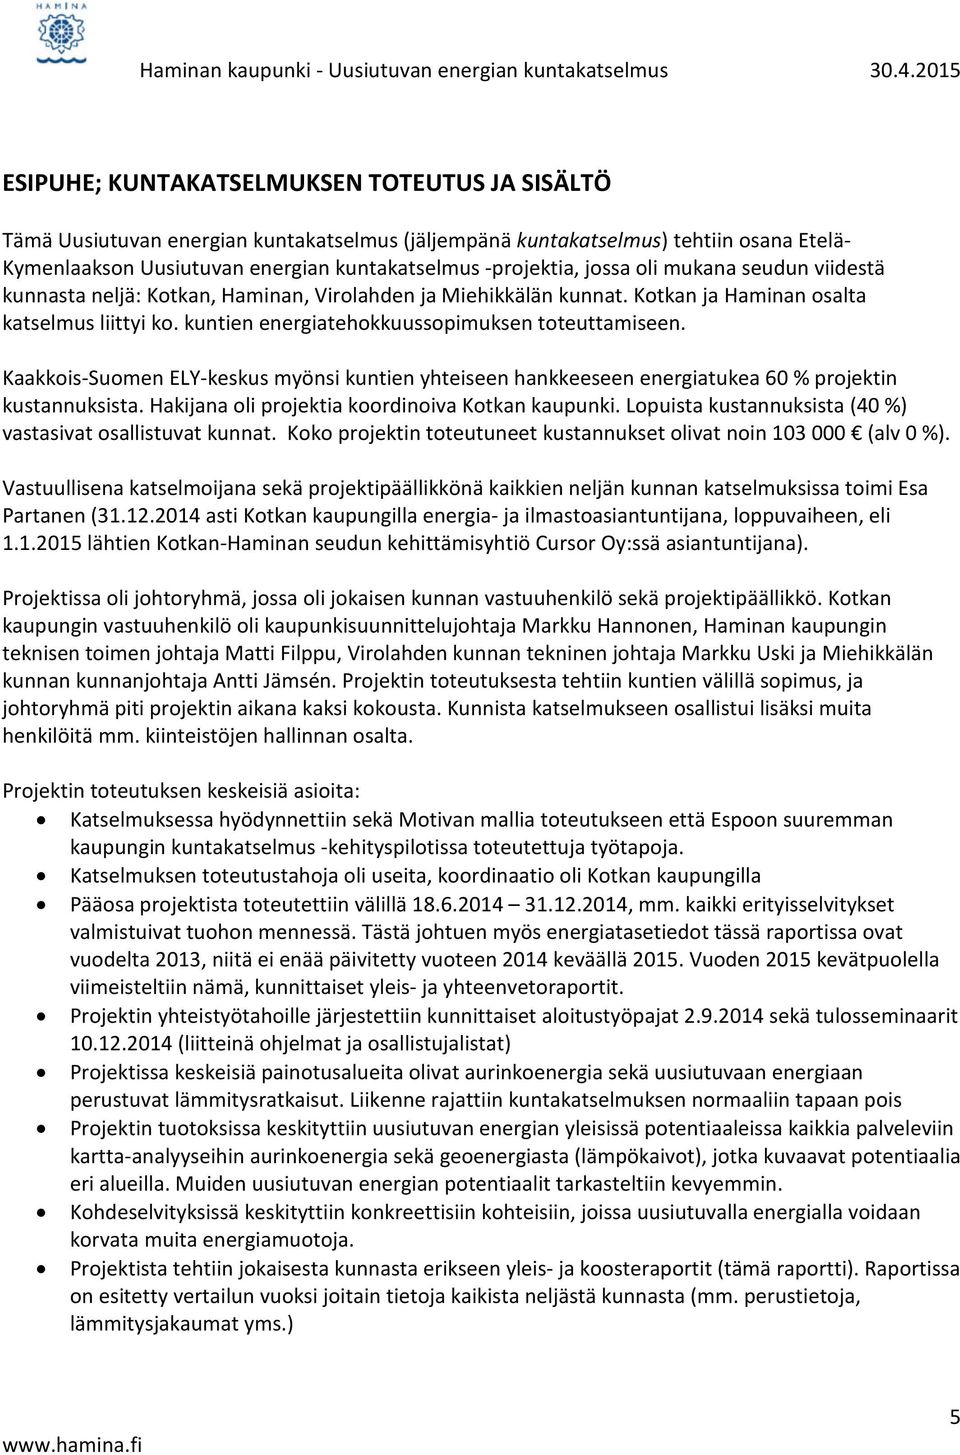 -projektia, jossa oli mukana seudun viidestä kunnasta neljä: Kotkan, Haminan, Virolahden ja Miehikkälän kunnat. Kotkan ja Haminan osalta katselmus liittyi ko.